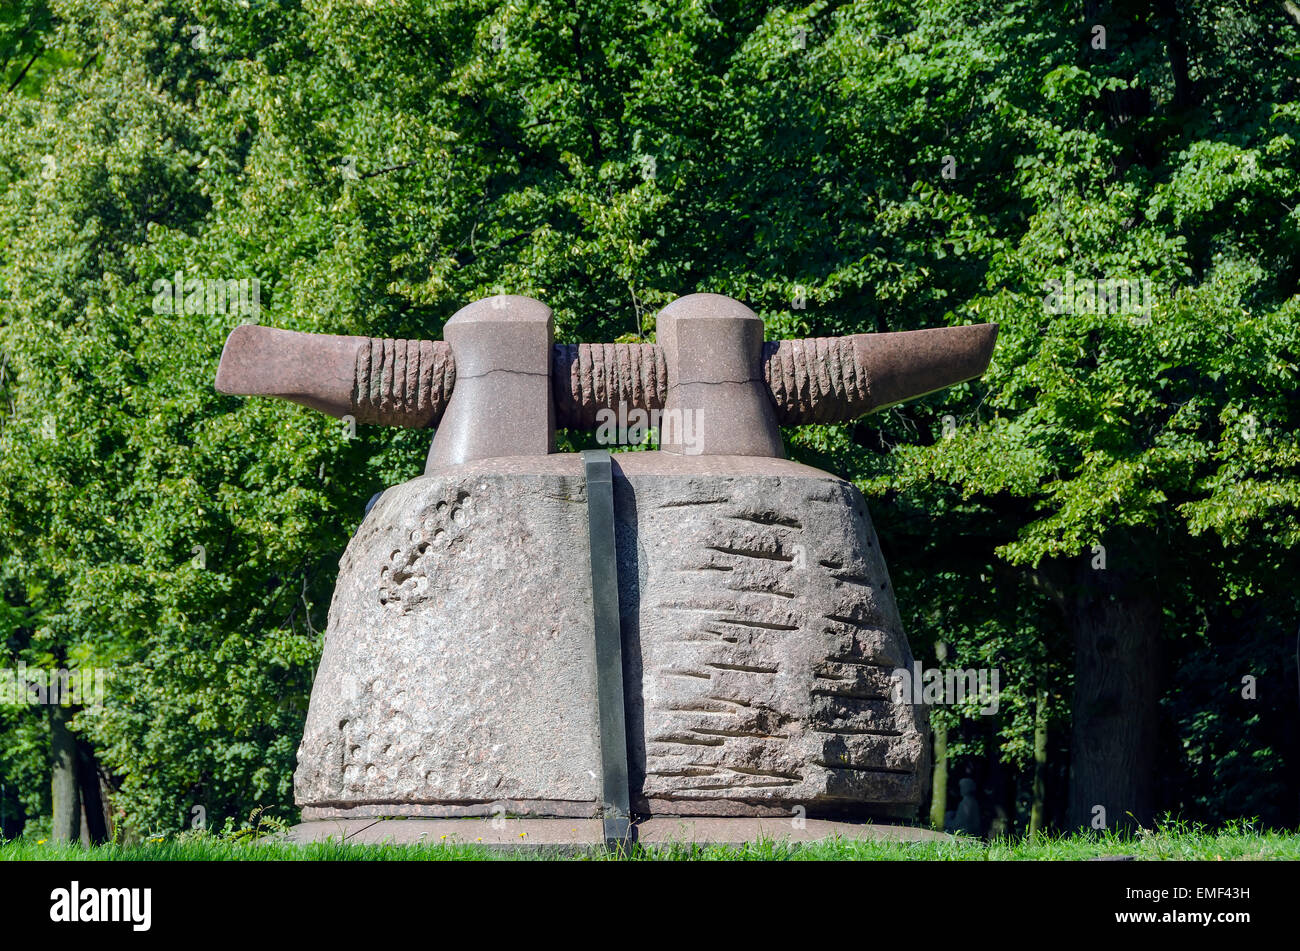 Klaipeda Lituania un parco di sculture all'aperto la galleria di arte moderna arte lituana Foto Stock